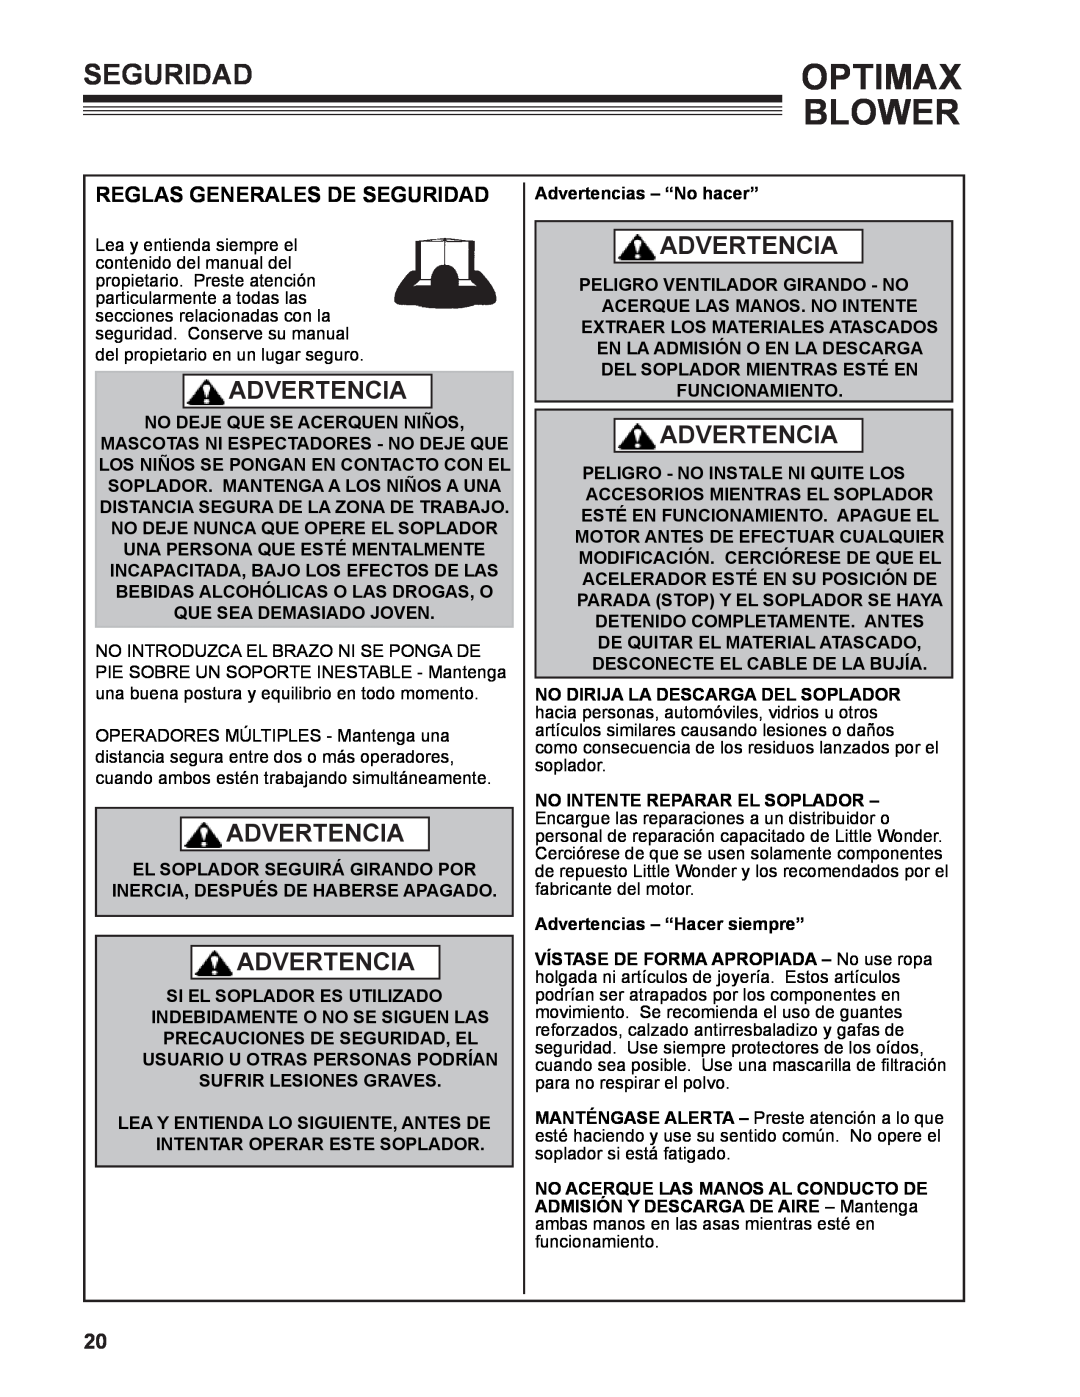 Little Wonder LB901-00-01 technical manual Reglas generales de seguridad, Optimax Blower, Seguridad, Advertencia 